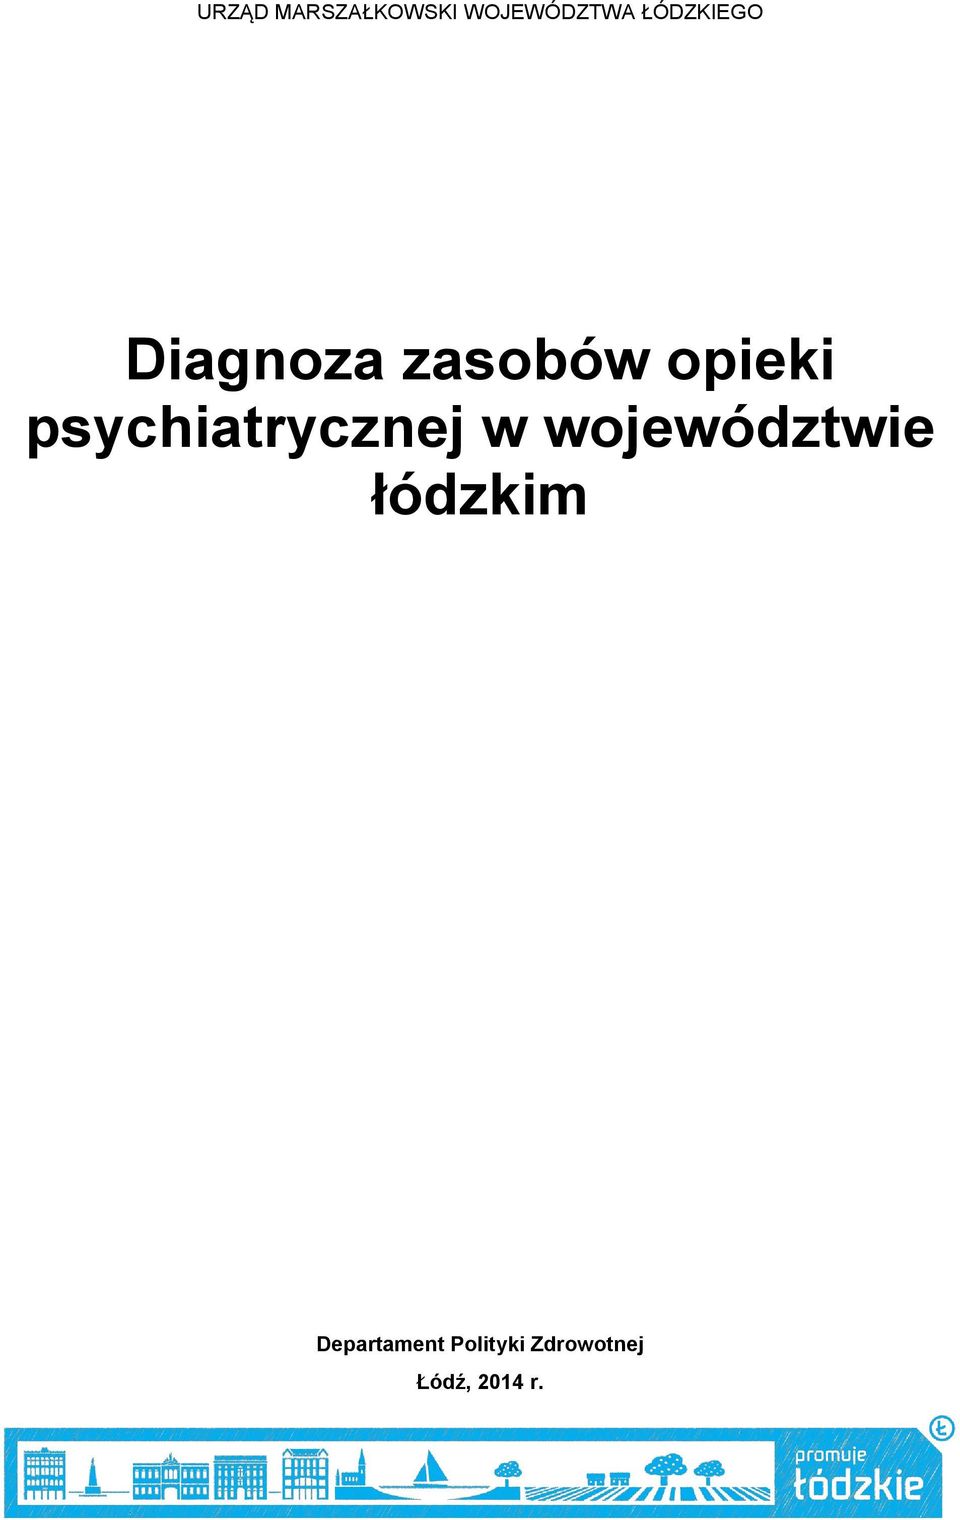 psychiatrycznej w województwie